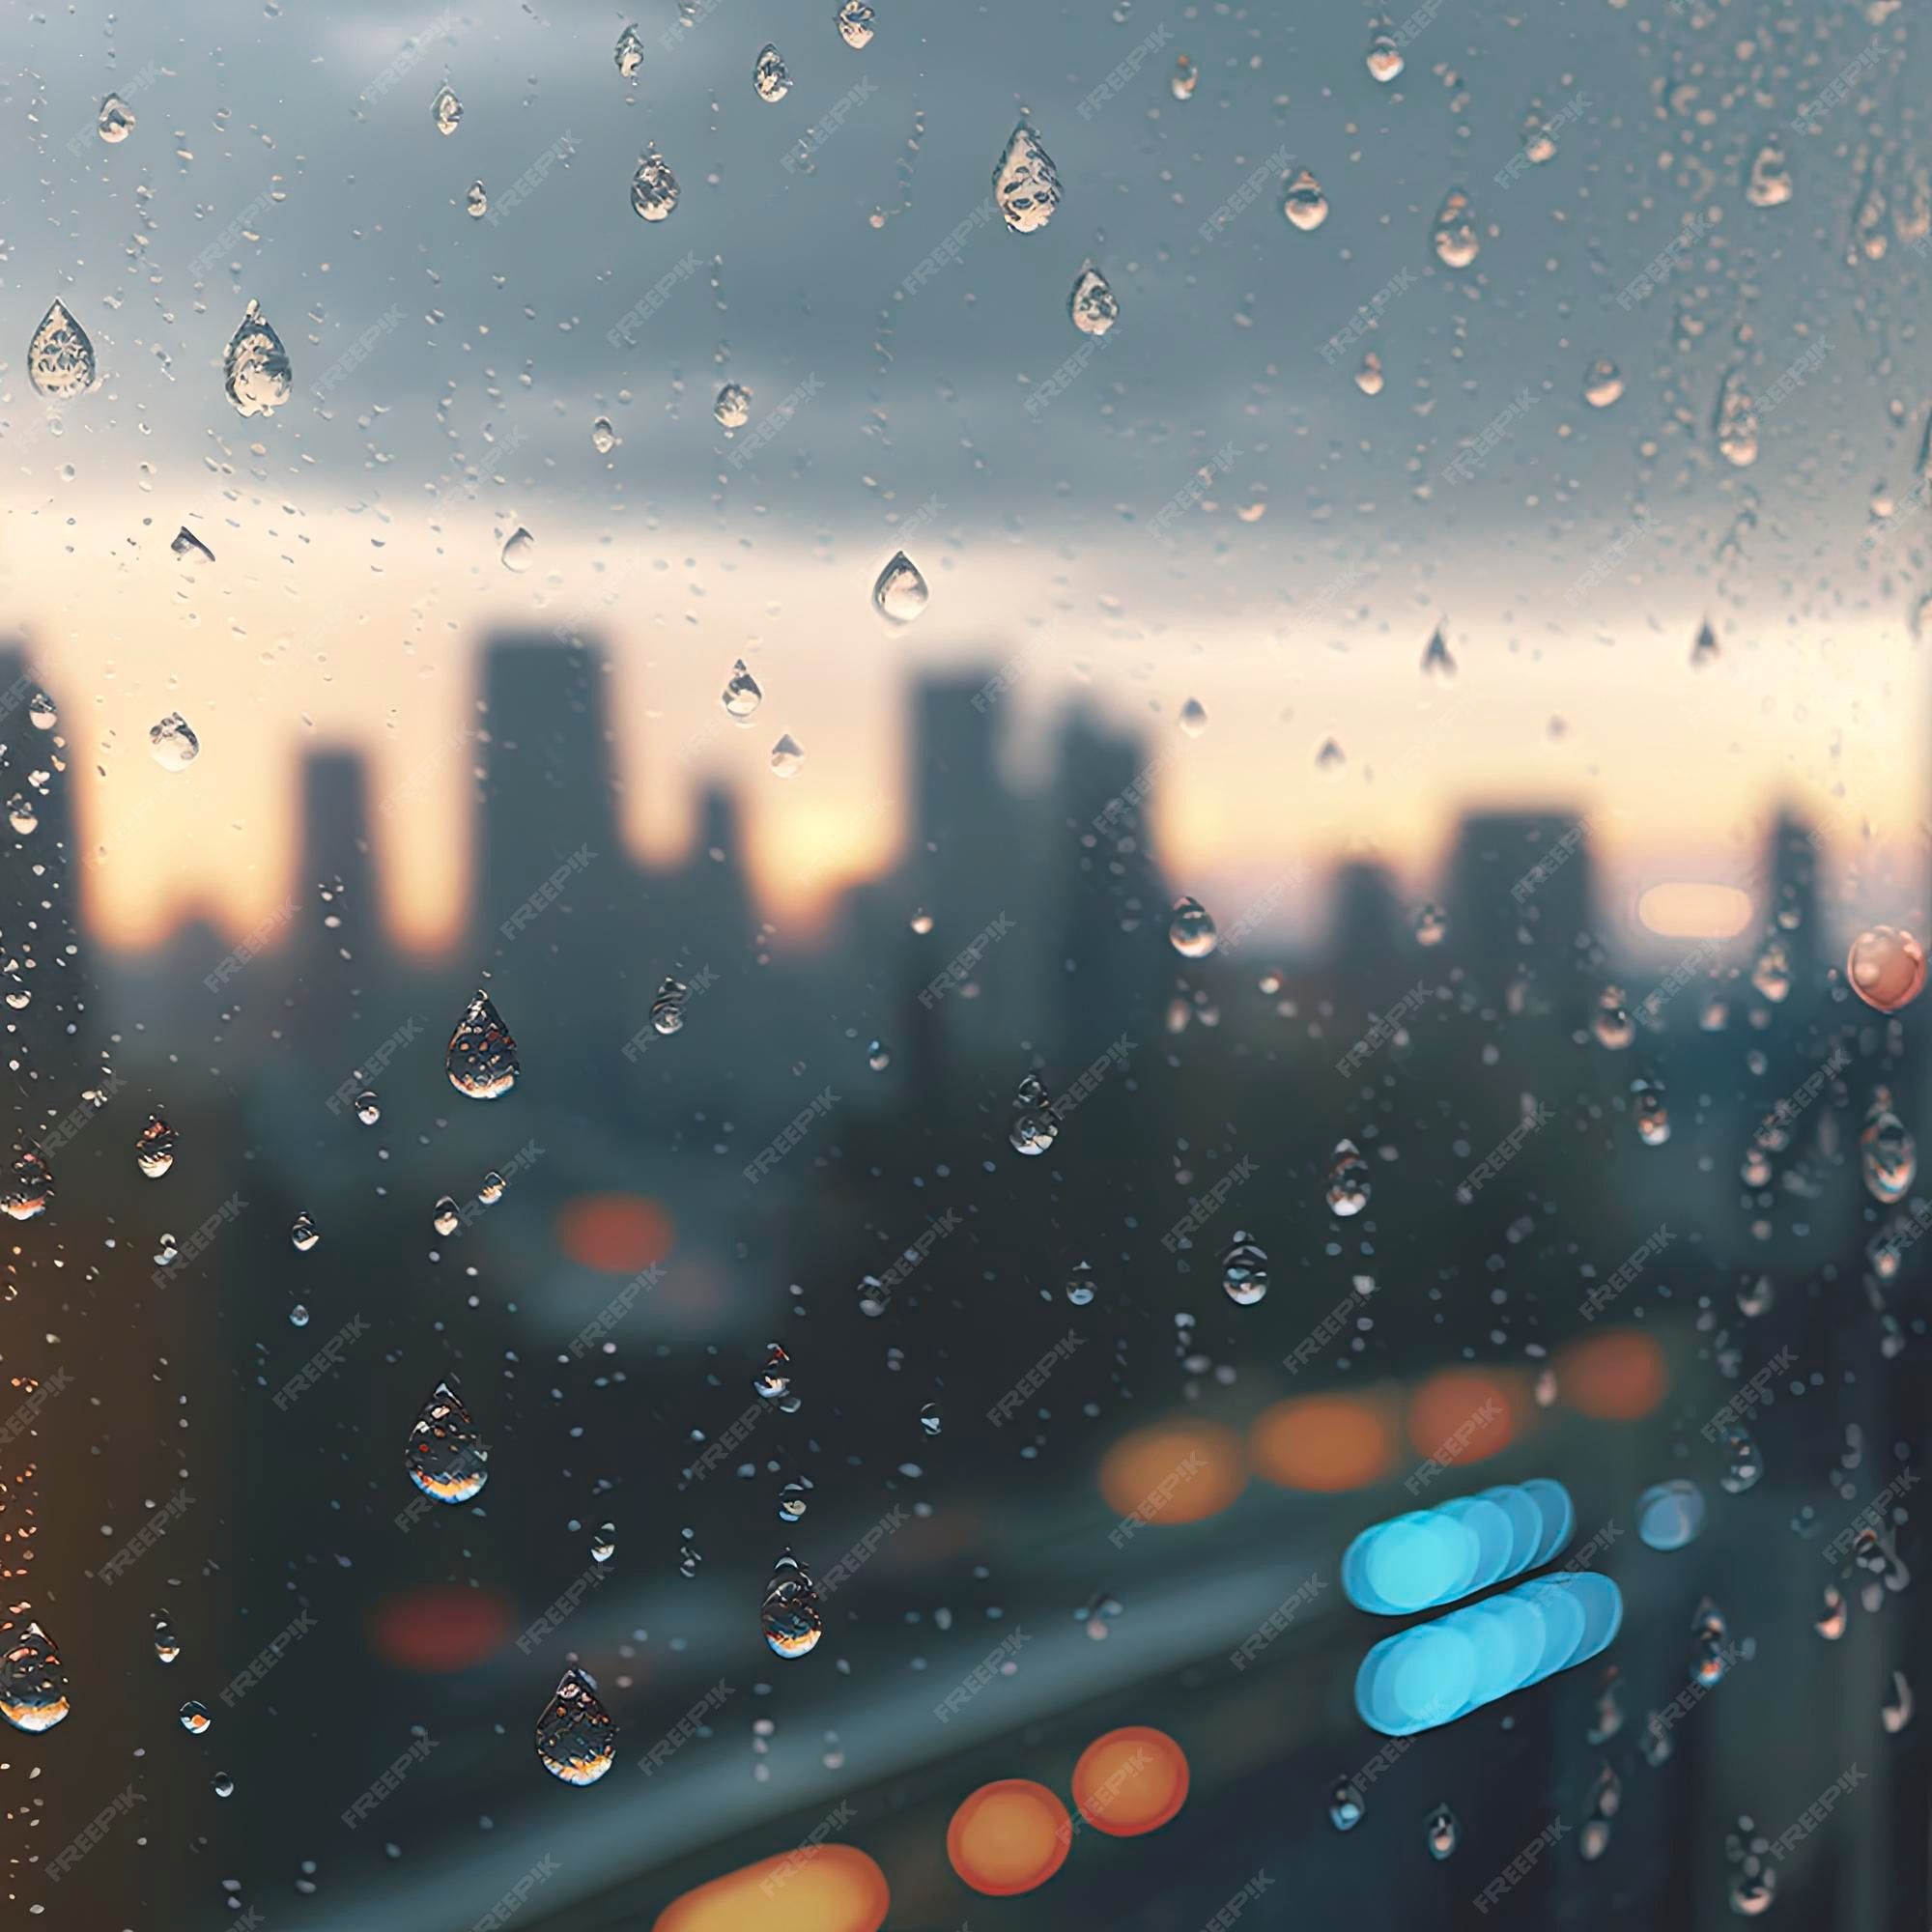  Regen Hintergrundbild 2000x2000. Fotografie von regentropfen auf dem fensterglas im fokus mit verschwommener skyline der stadt im hintergrund